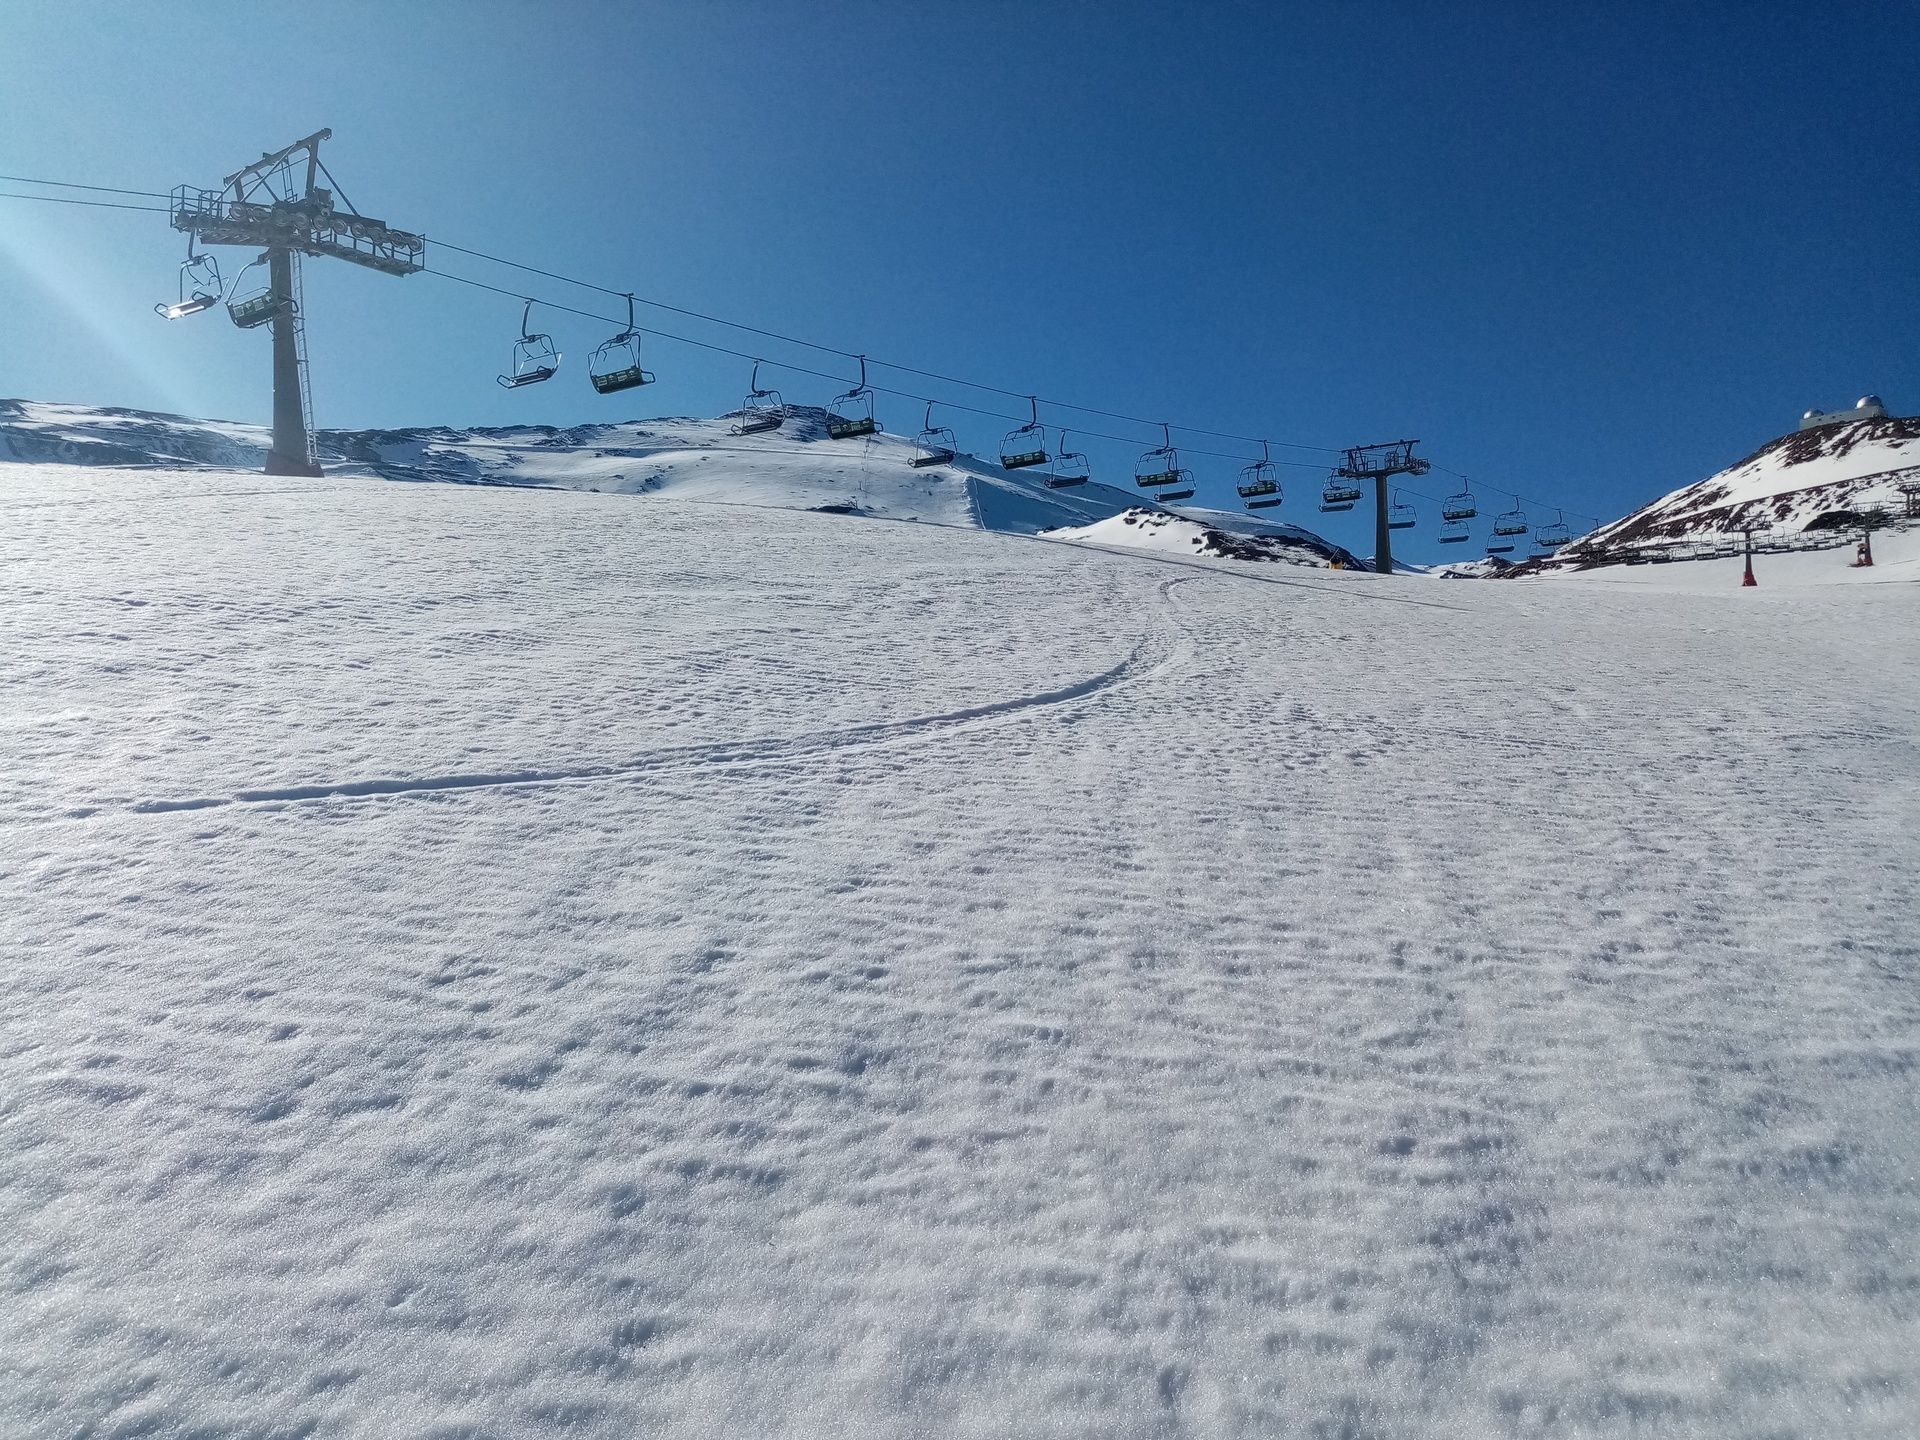 Exprimiendo el esquí de primavera: Elorrieta